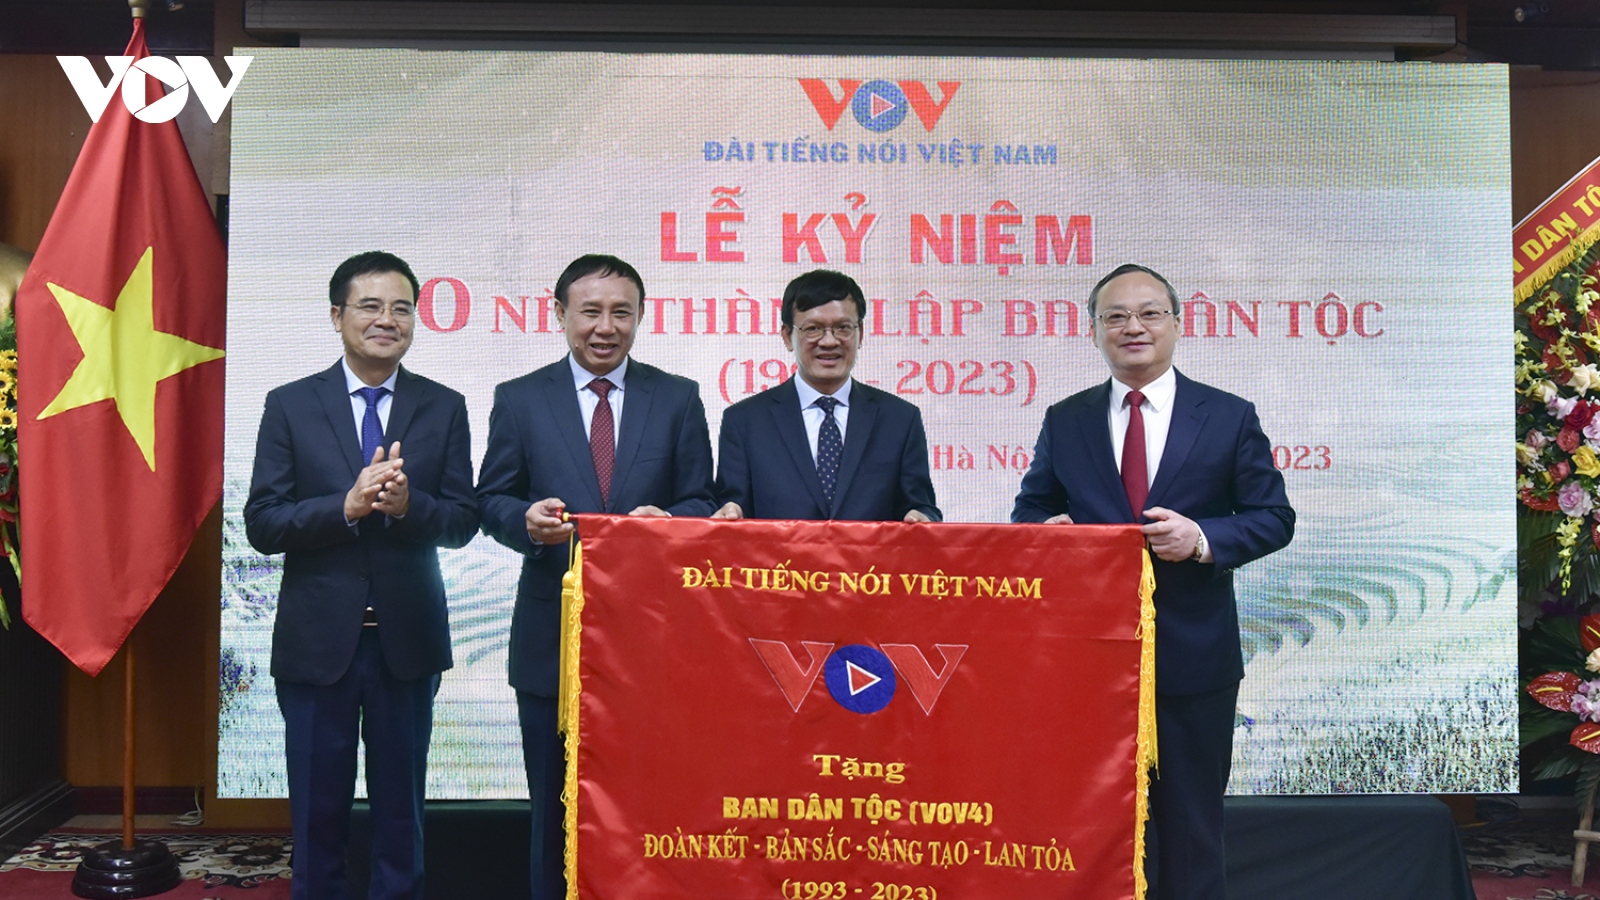  xu vang 777
4 đóng góp lớn trong chặng đường 78 năm của Đài Tiếng nói Việt Nam